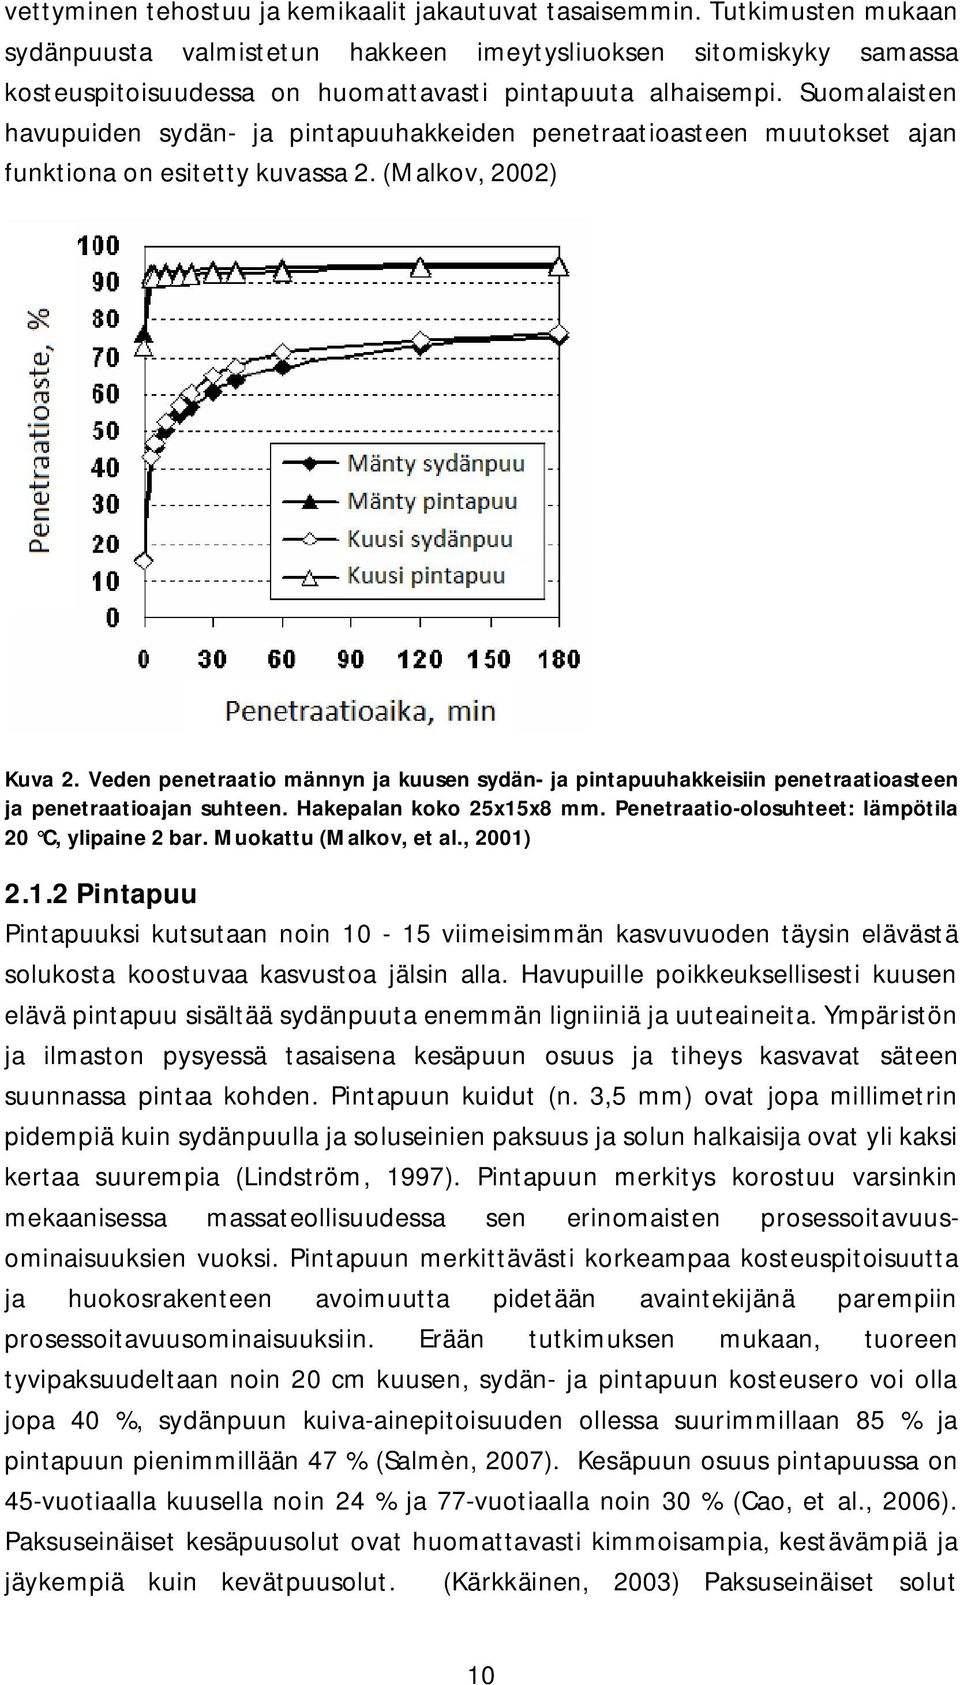 Suomalaisten havupuiden sydän- ja pintapuuhakkeiden penetraatioasteen muutokset ajan funktiona on esitetty kuvassa 2. (Malkov, 2002) Kuva 2.